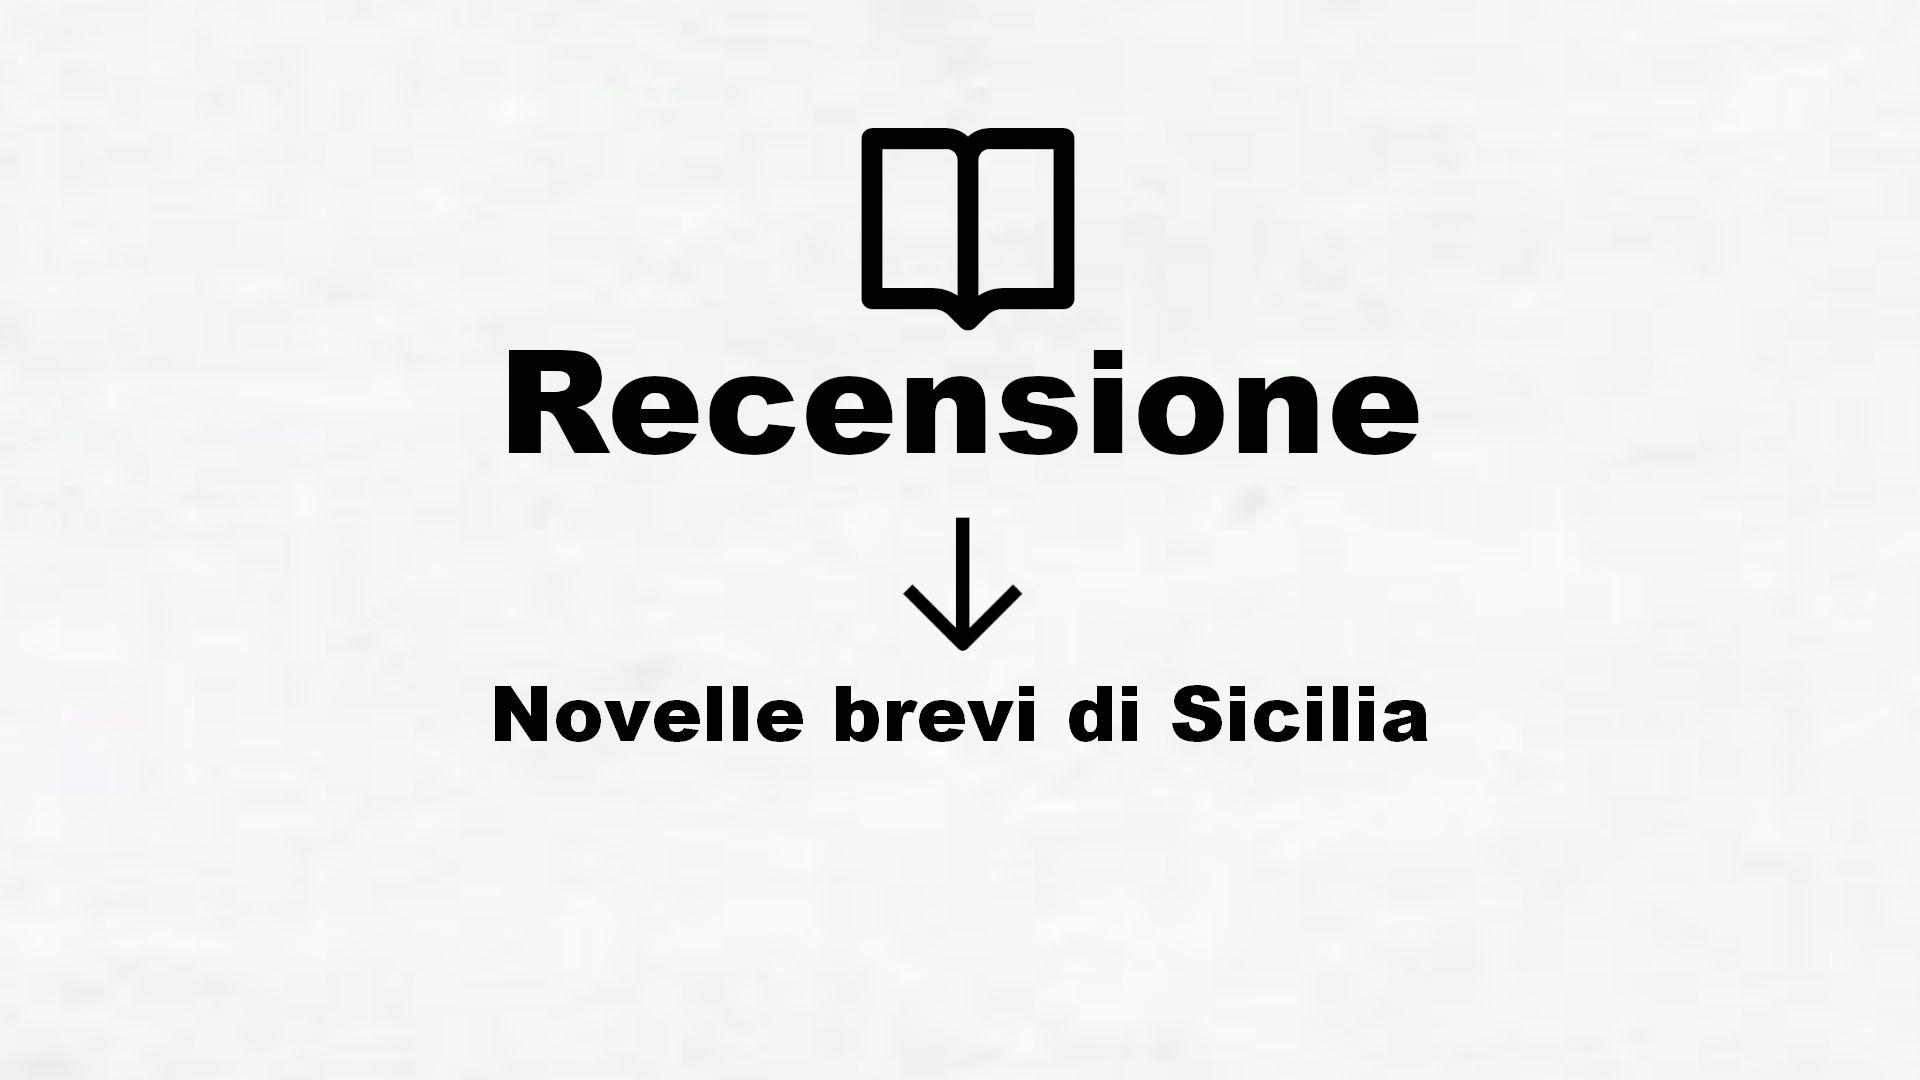 Novelle brevi di Sicilia – Recensione Libro